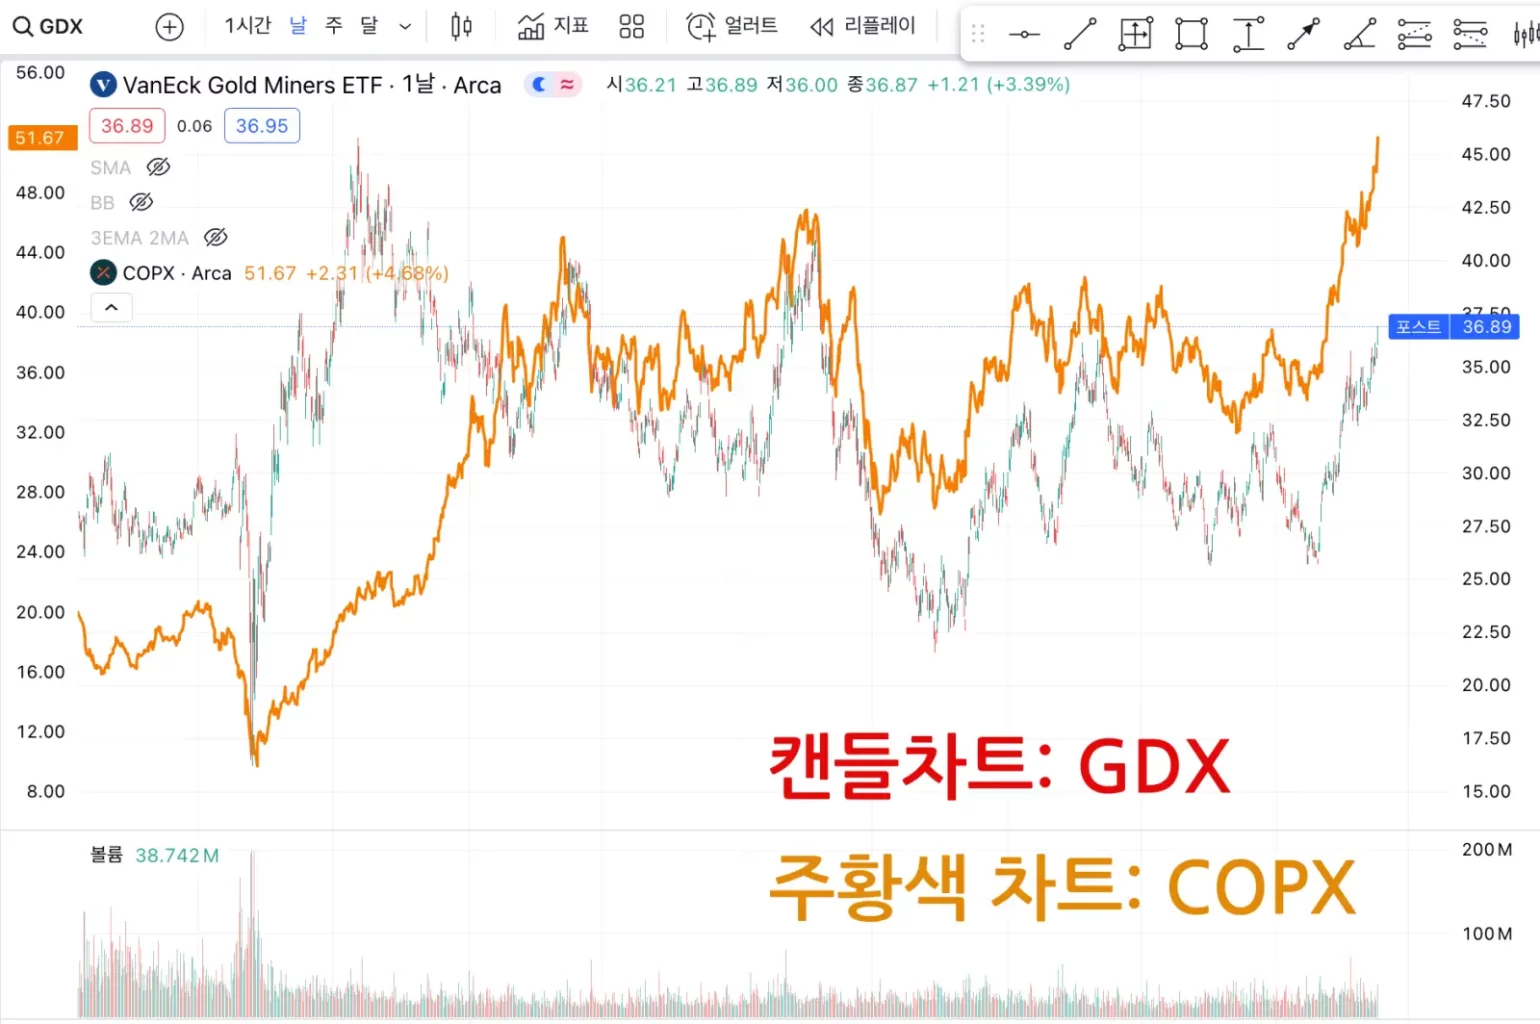 GDX COPX 비교 그래프 사진